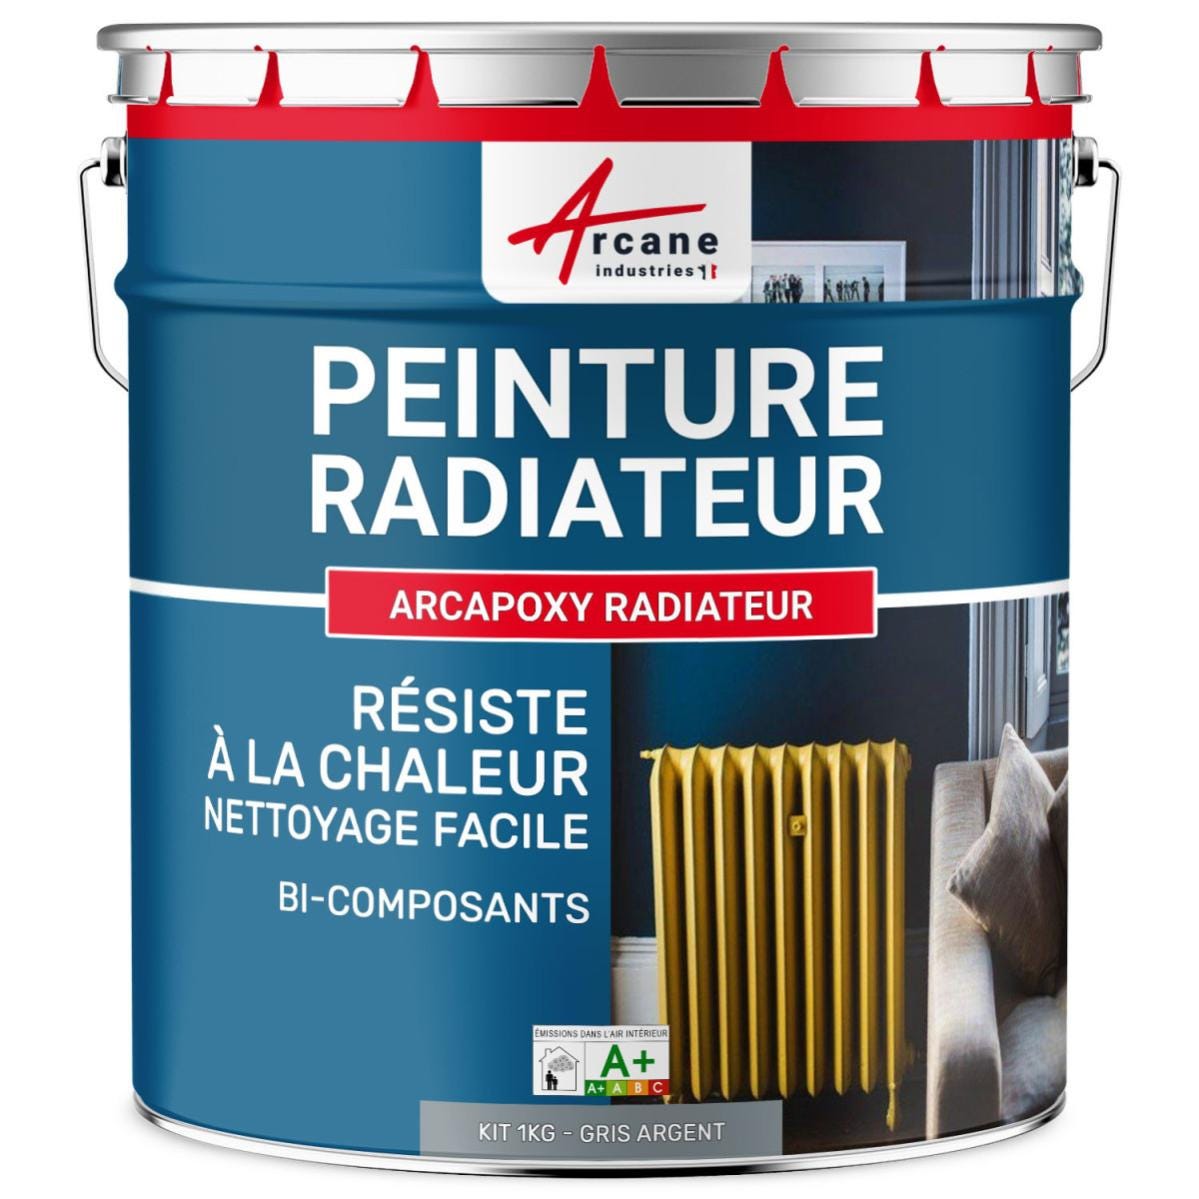 Peinture Radiateur fonte acier alu - PEINTURE RADIATEUR - 1 kg (jusqu'à 5 m² en 2 couches) - Gris Argent - RAL 7001 - ARCANE INDUSTRIES 5